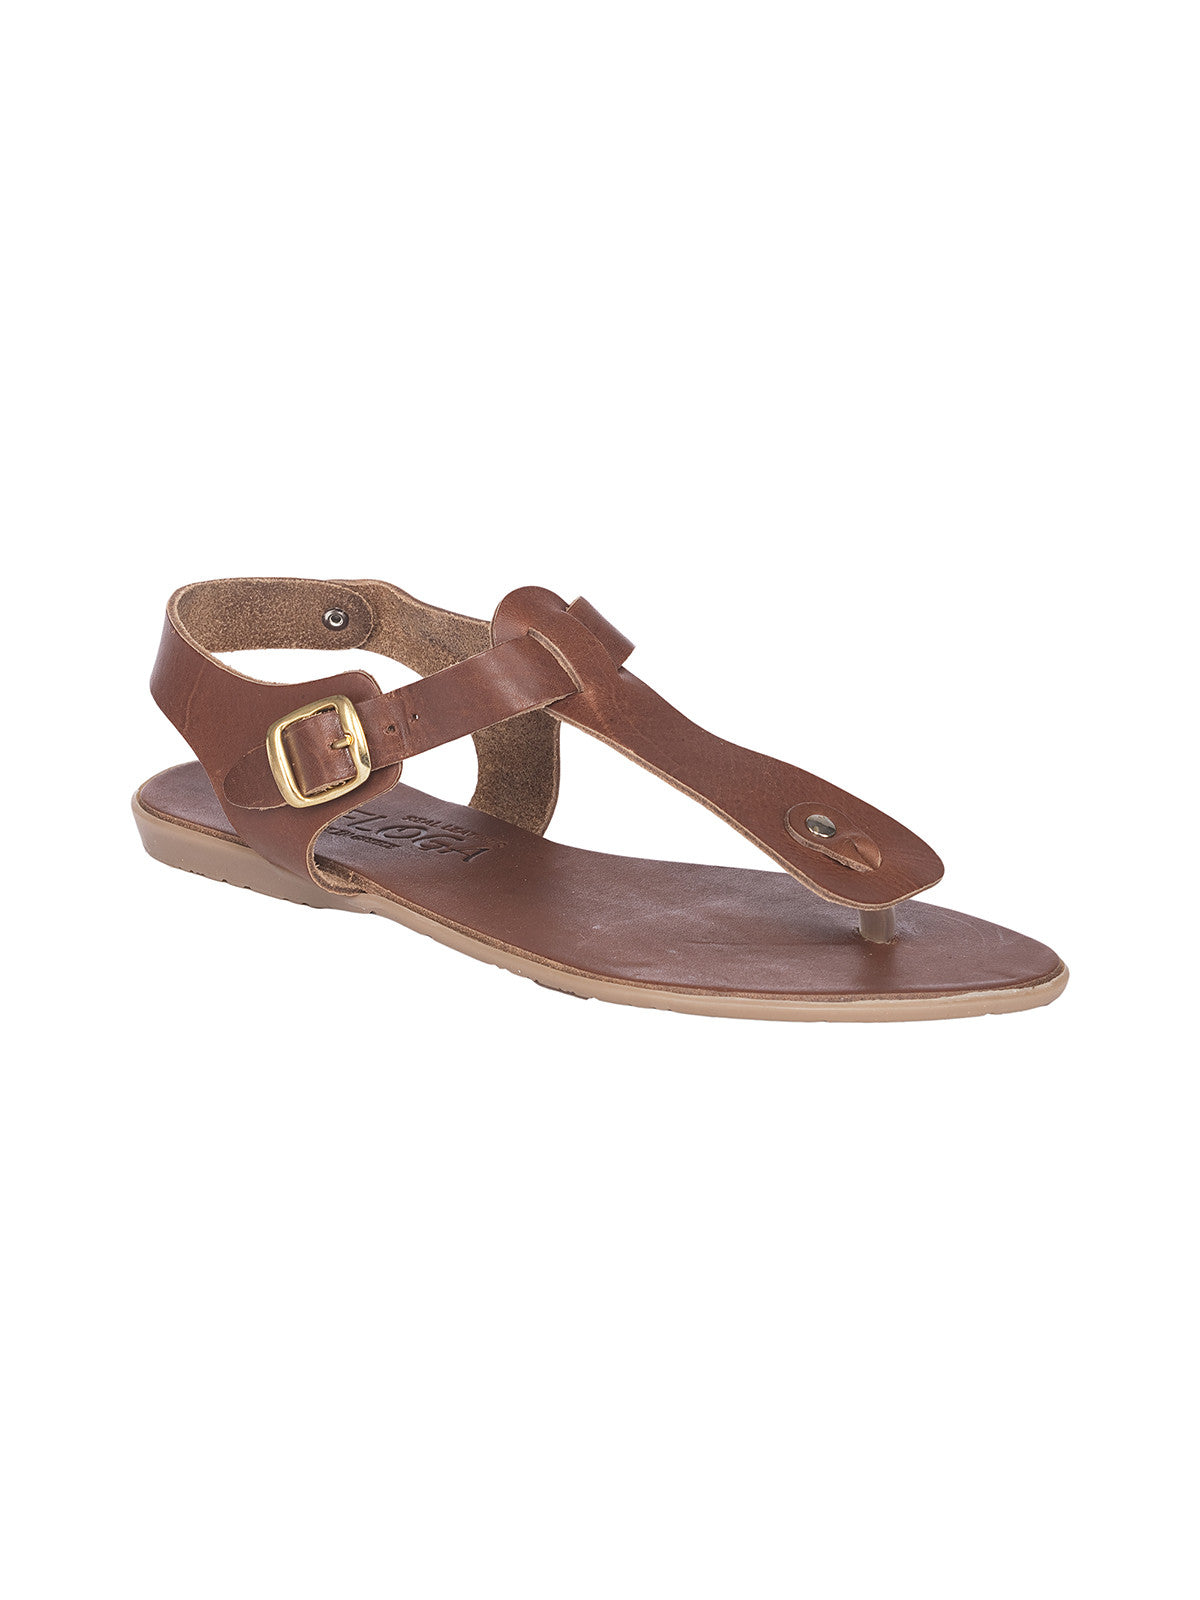 Konstantina Greek Leather Sandals